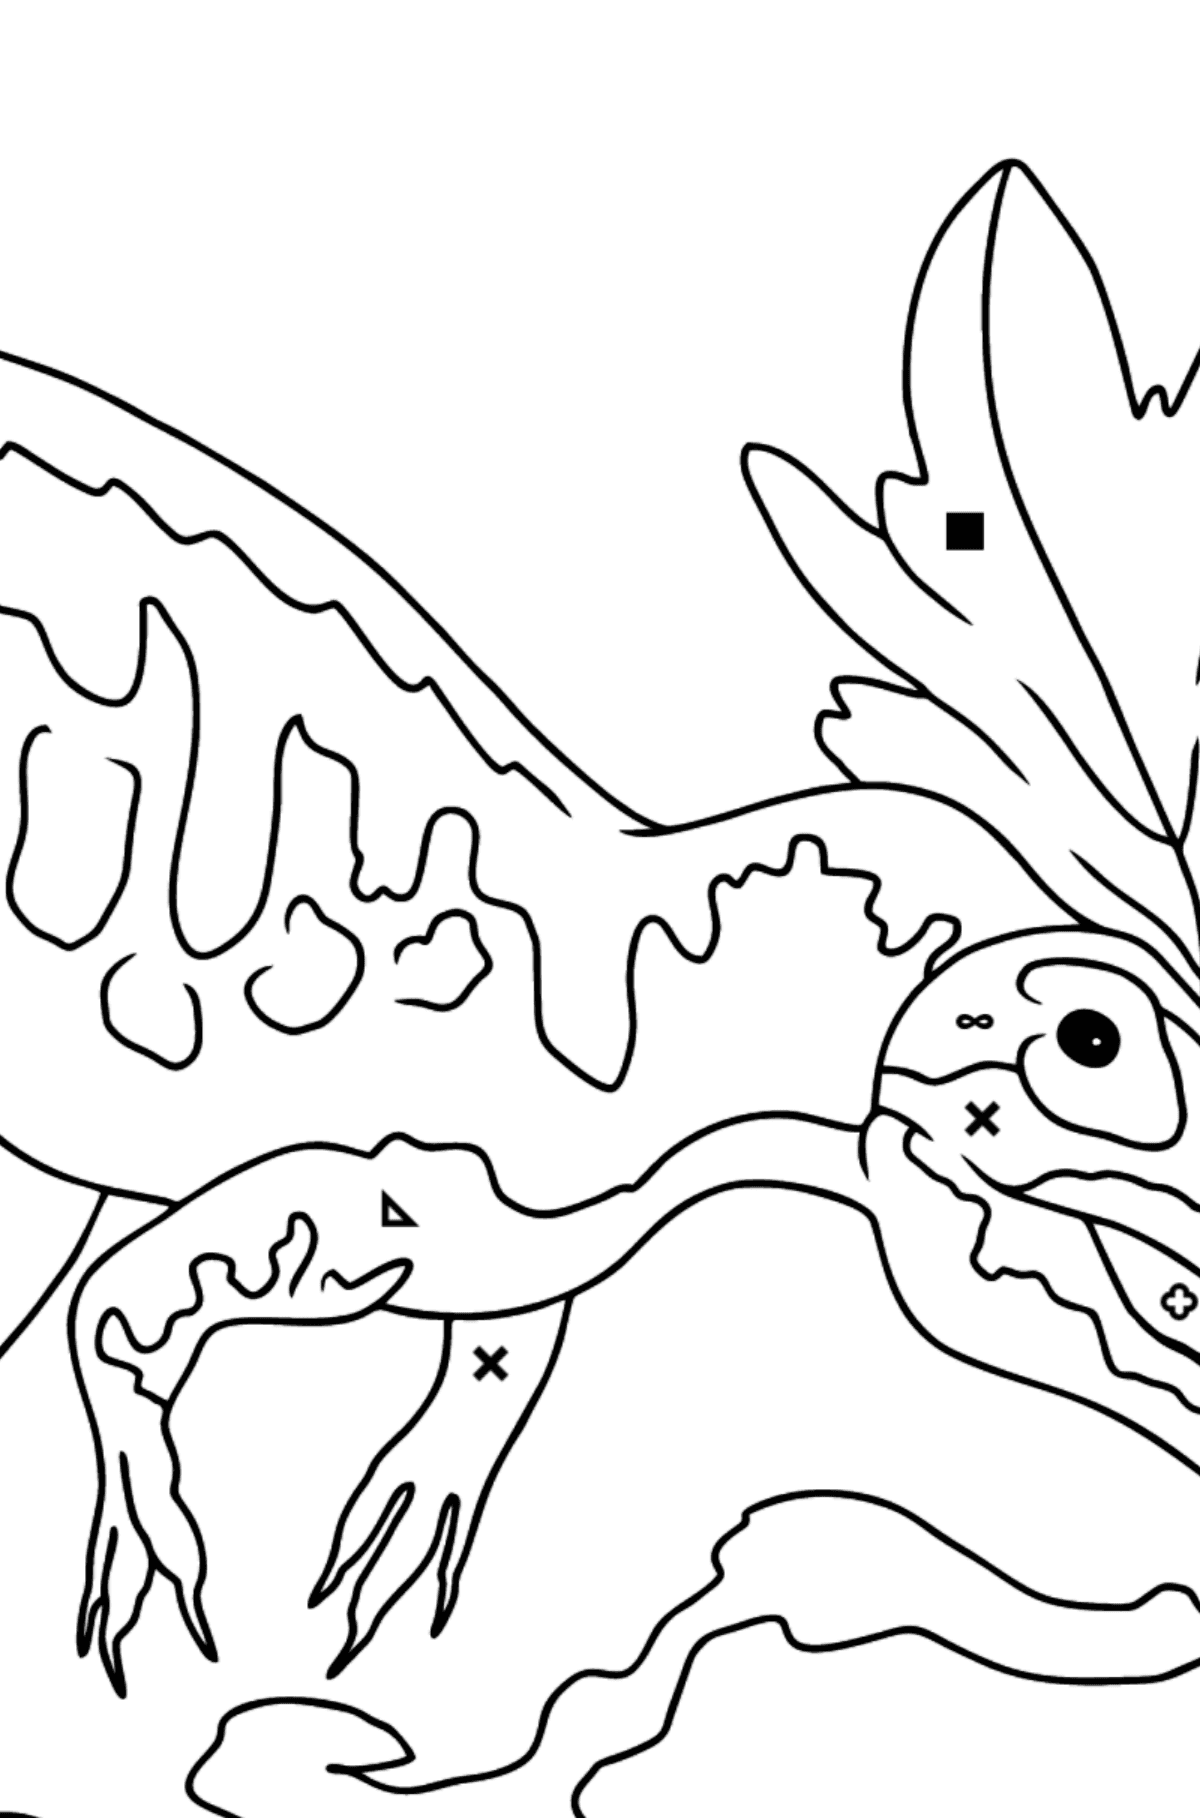 Alosaurio Dibujo Para Colorear - Colorear por Símbolos para Niños